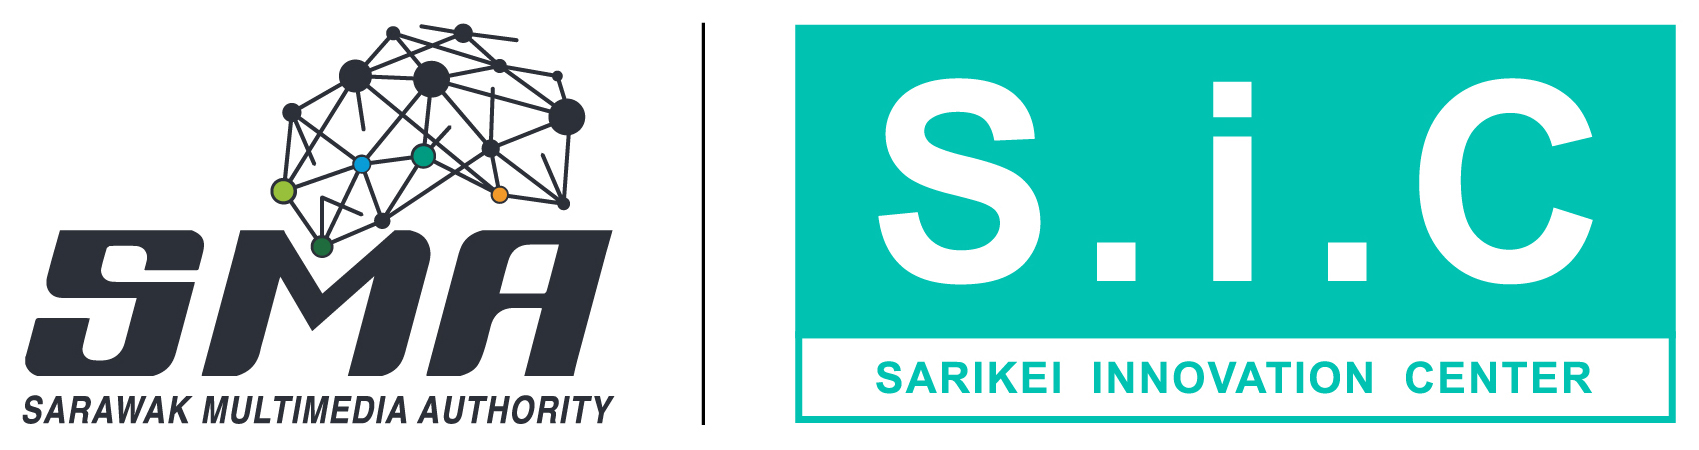 Sarikei Innovation Center